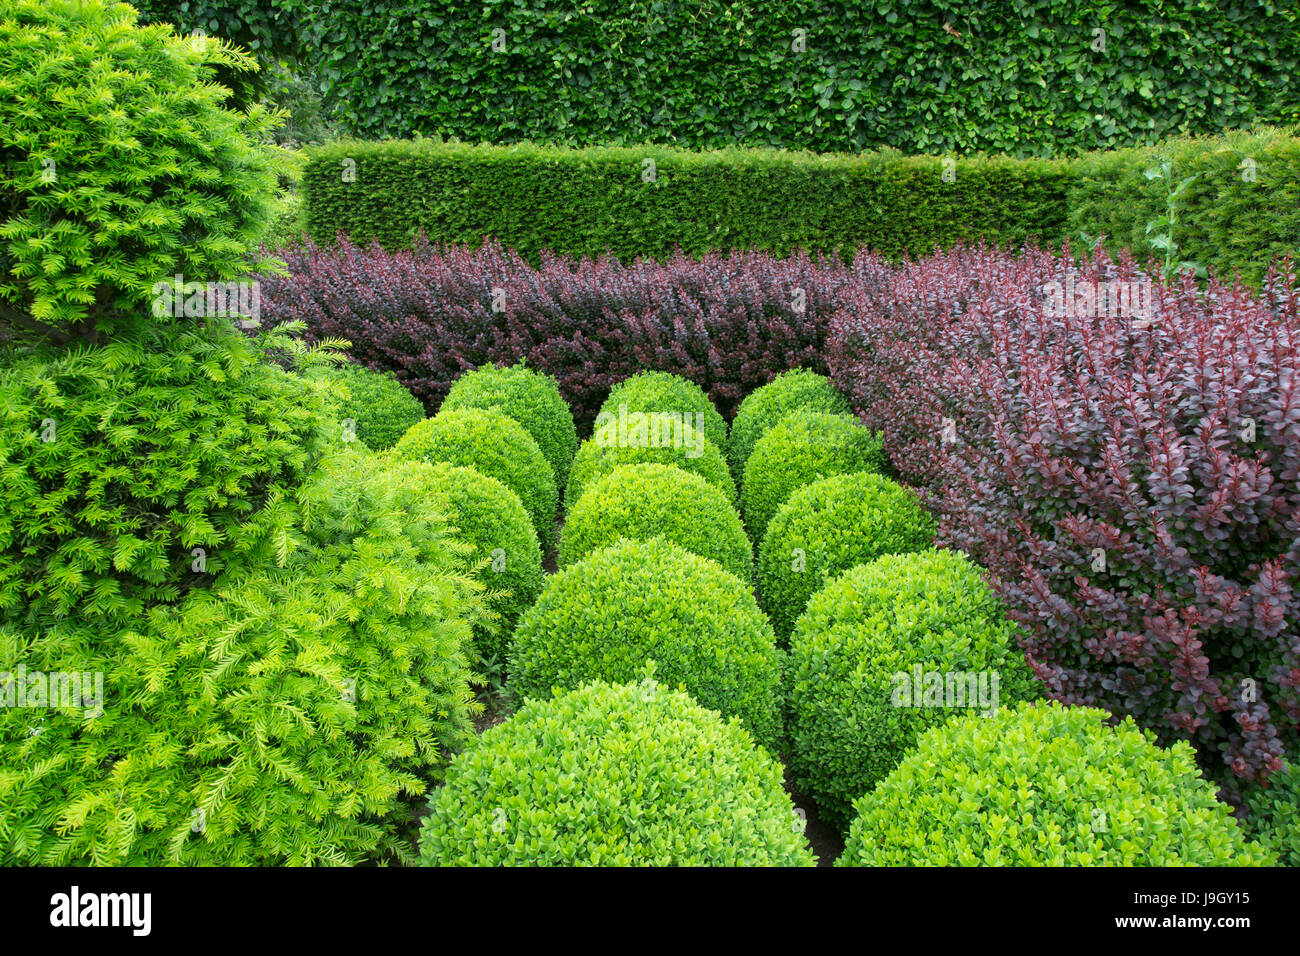 Box globes;yew;hornbeam and purple Berberis hedging Stock Photo